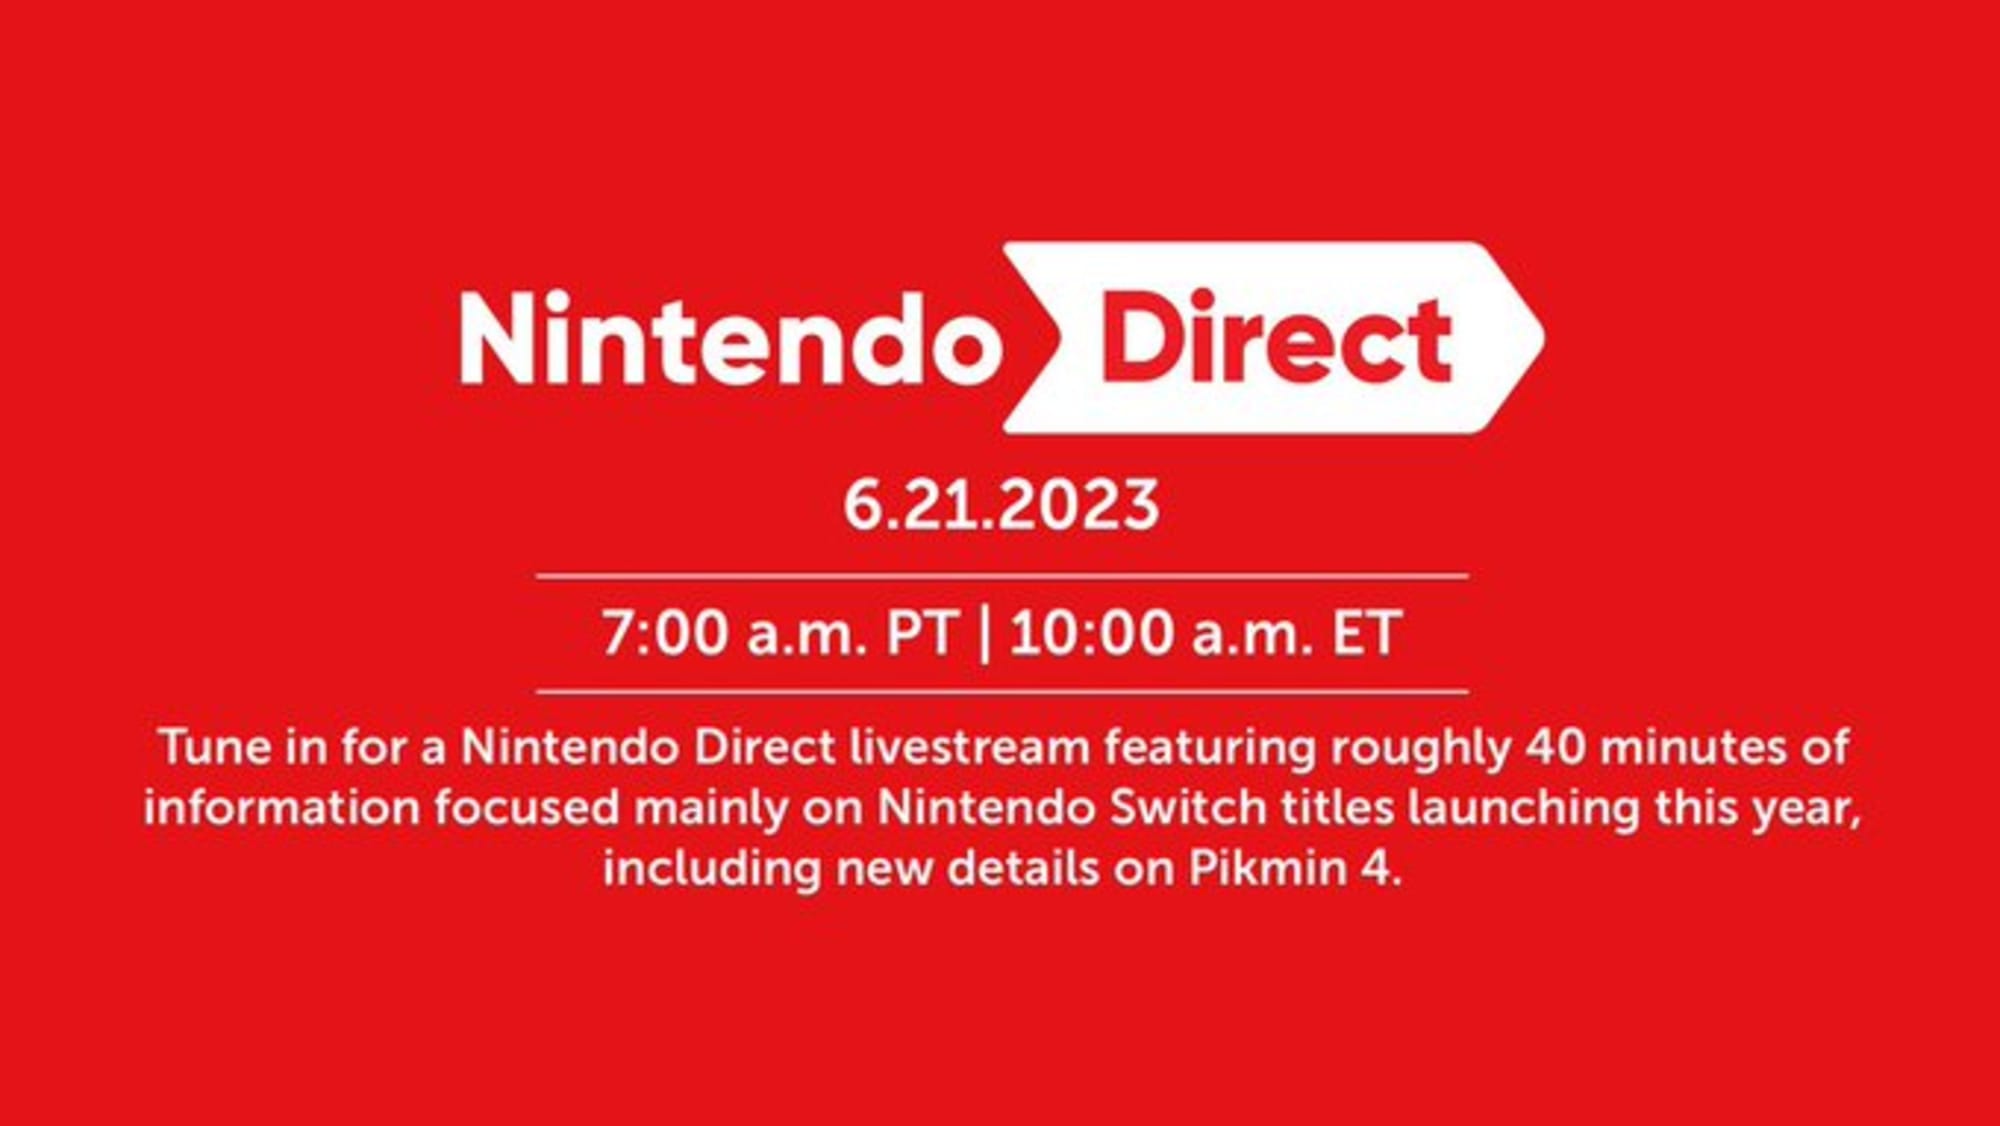 Nintendo Direct June 21 Full List of Games